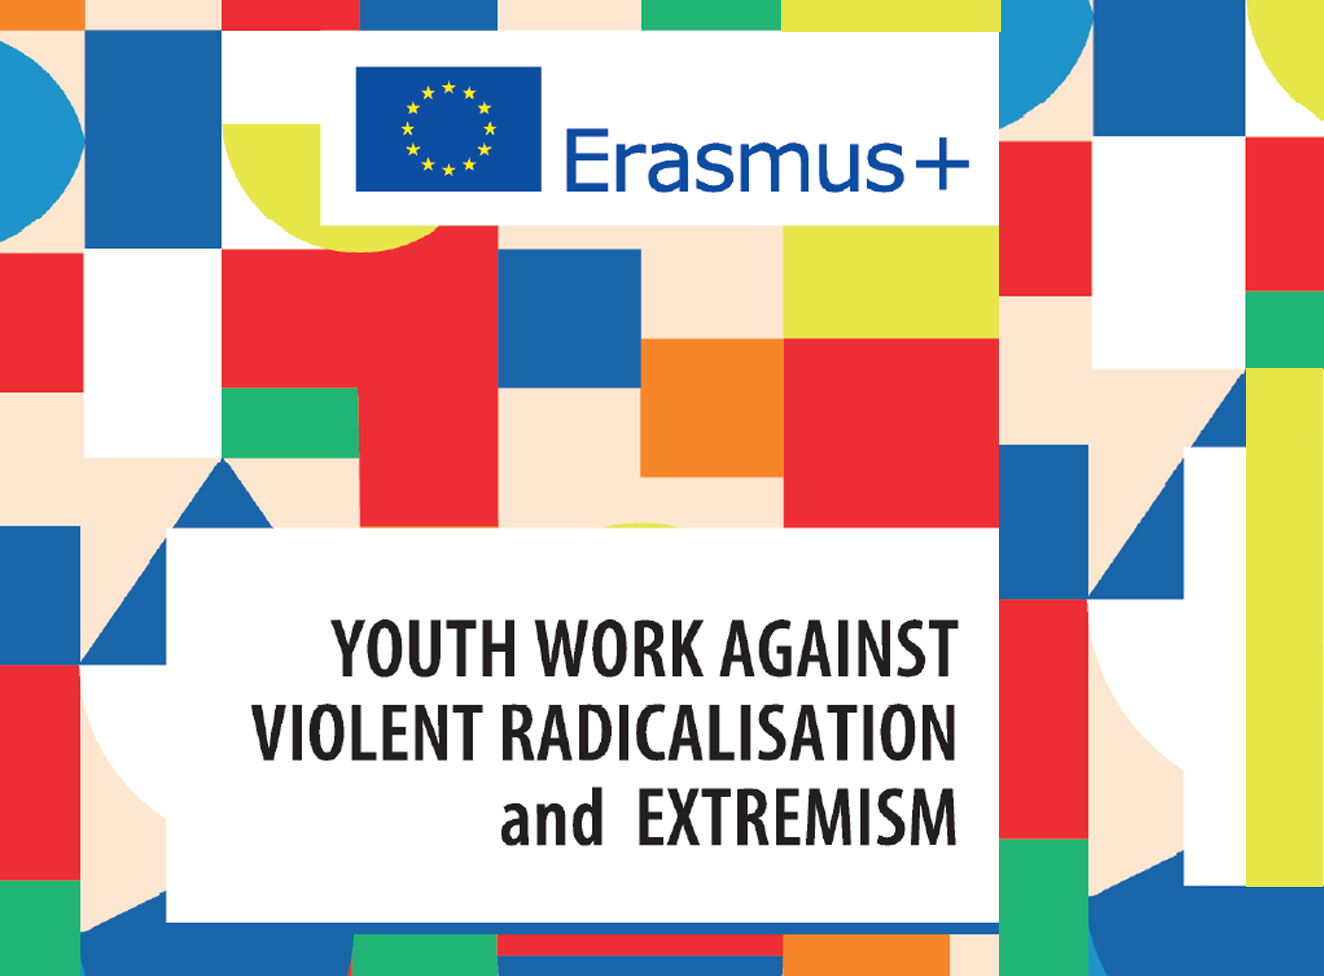 Bild: Toolkit für die Jugendarbeit zur Radikalisierungsprävention